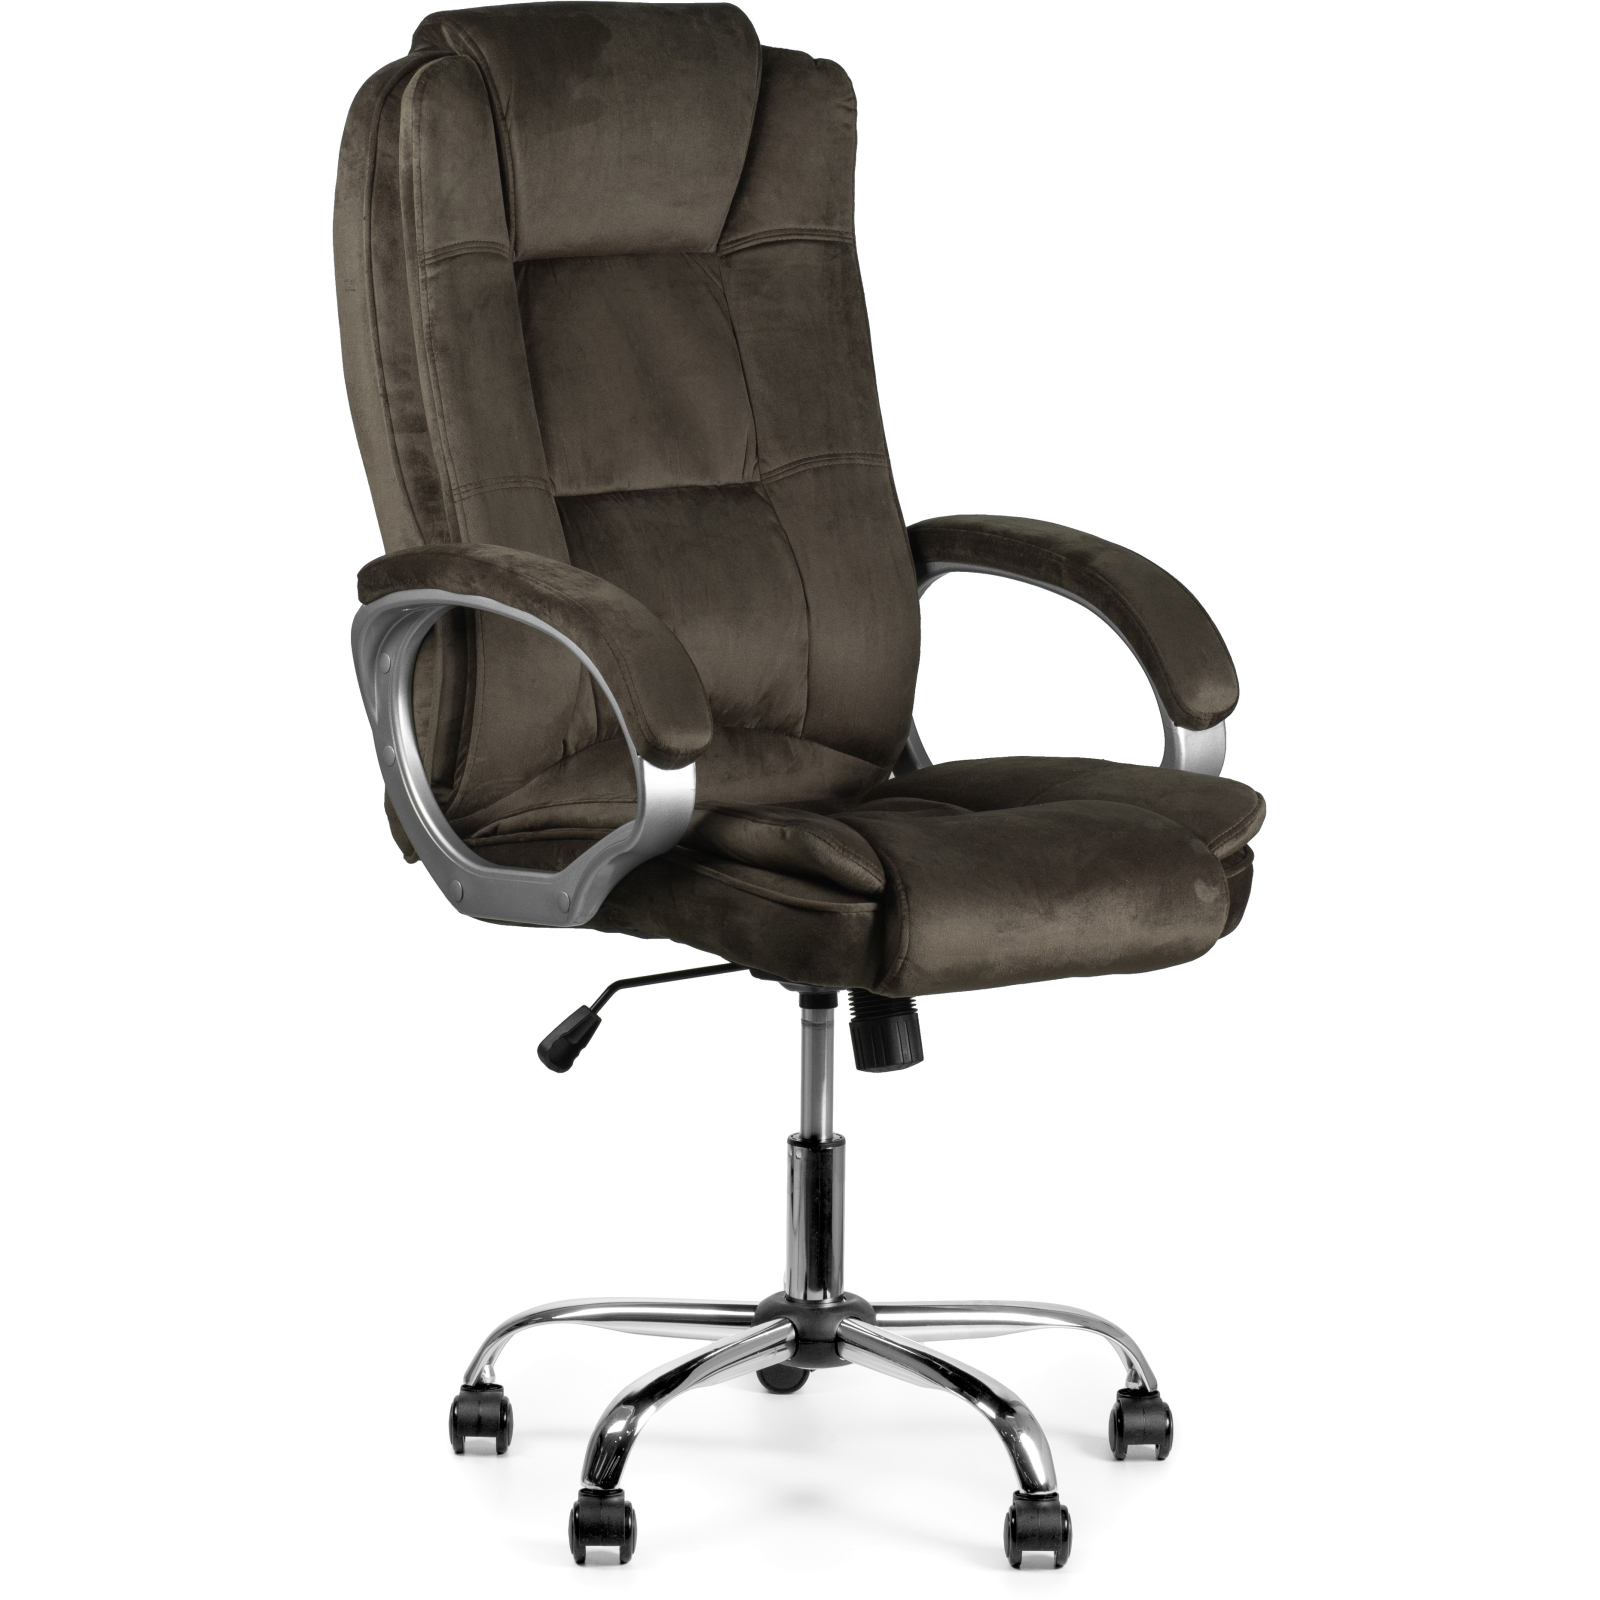 Офисное кресло Barsky Soft Microfiber Grey Soft-03 (Soft-03)